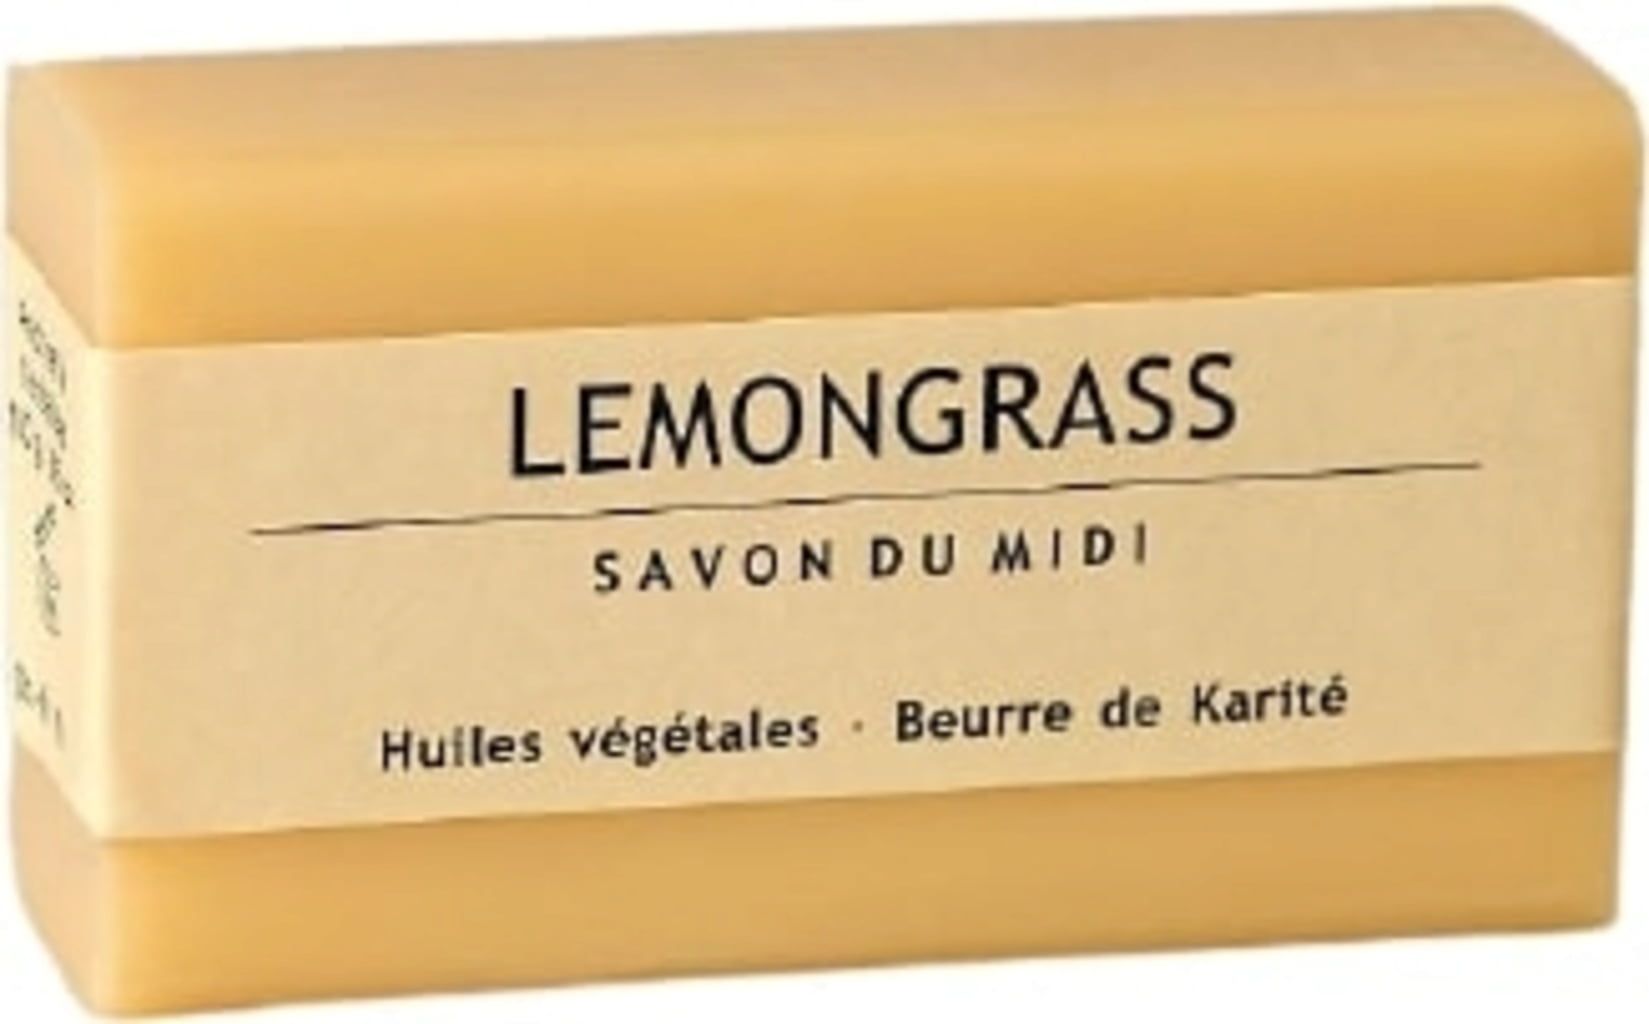 Savon du Midi Seife mit Karité-Butter - Lemongrass